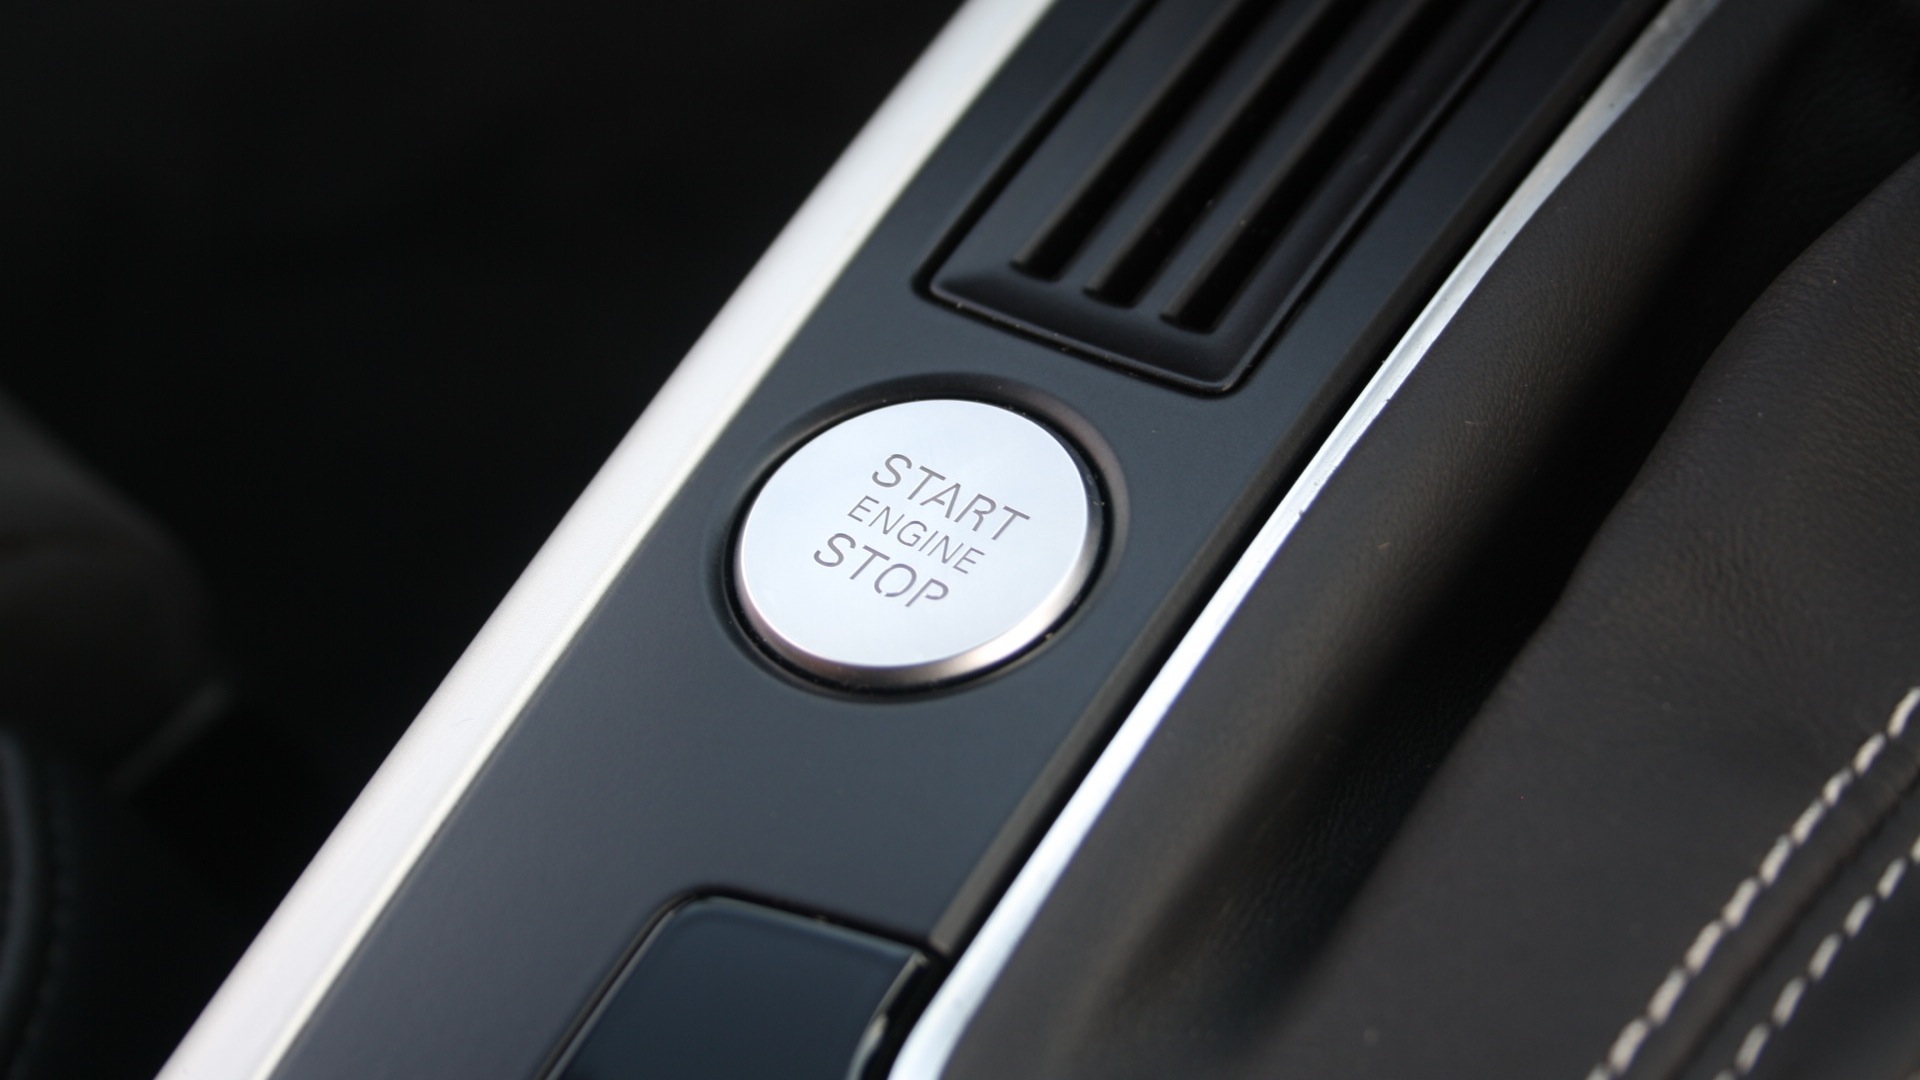 Audi-S4-2012-3-0-TFSI-Quattro-Interior